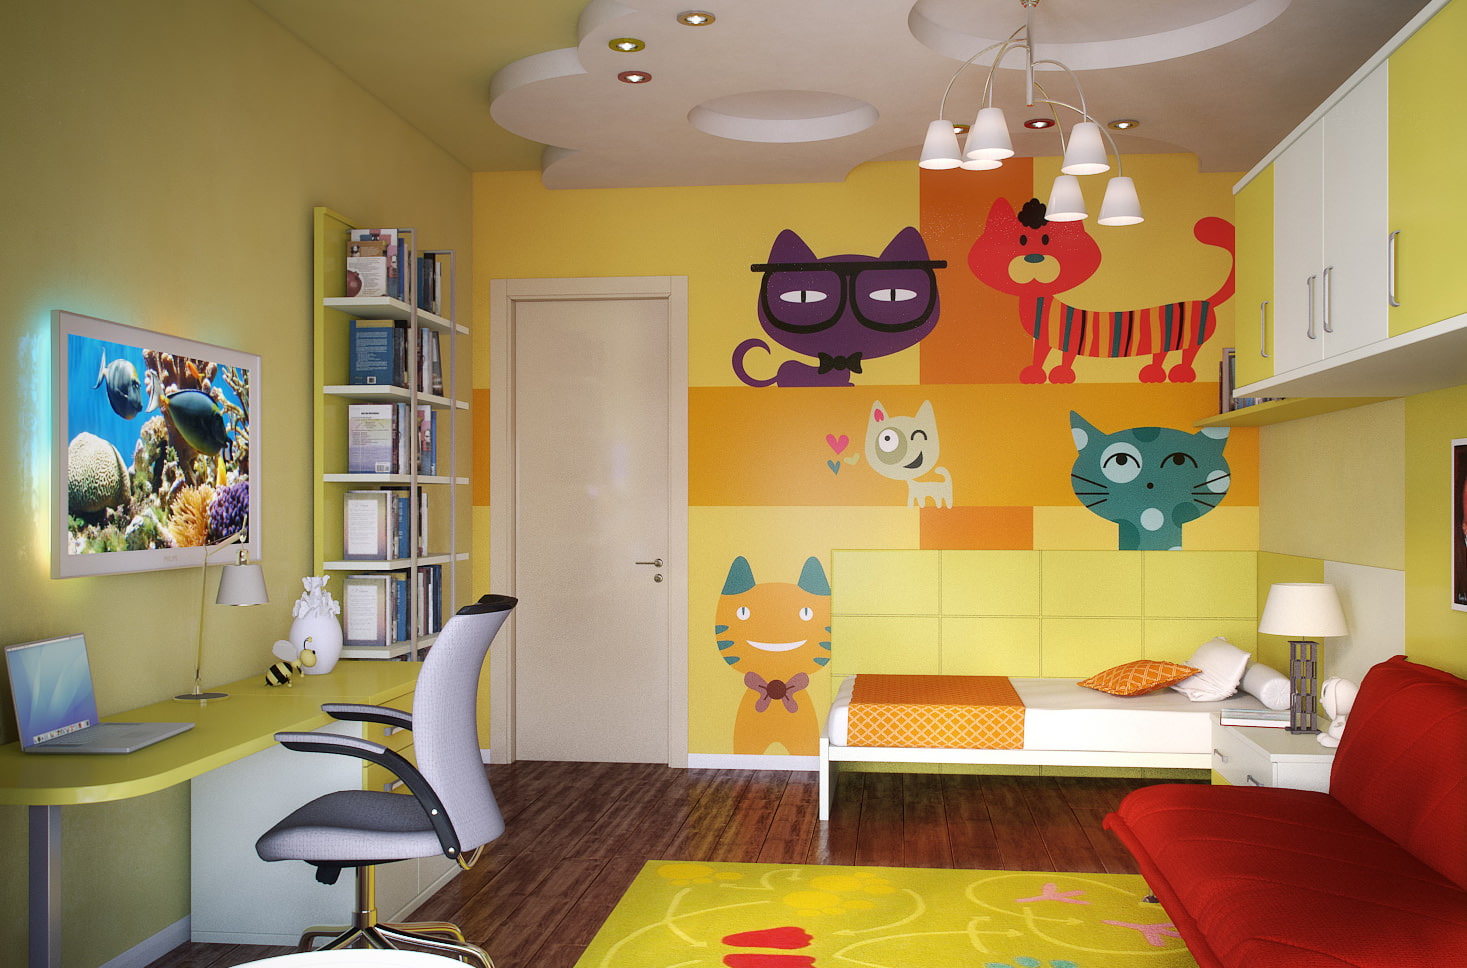 Дизайн детской комнаты: фото-идеи, выбор цвета и стиля